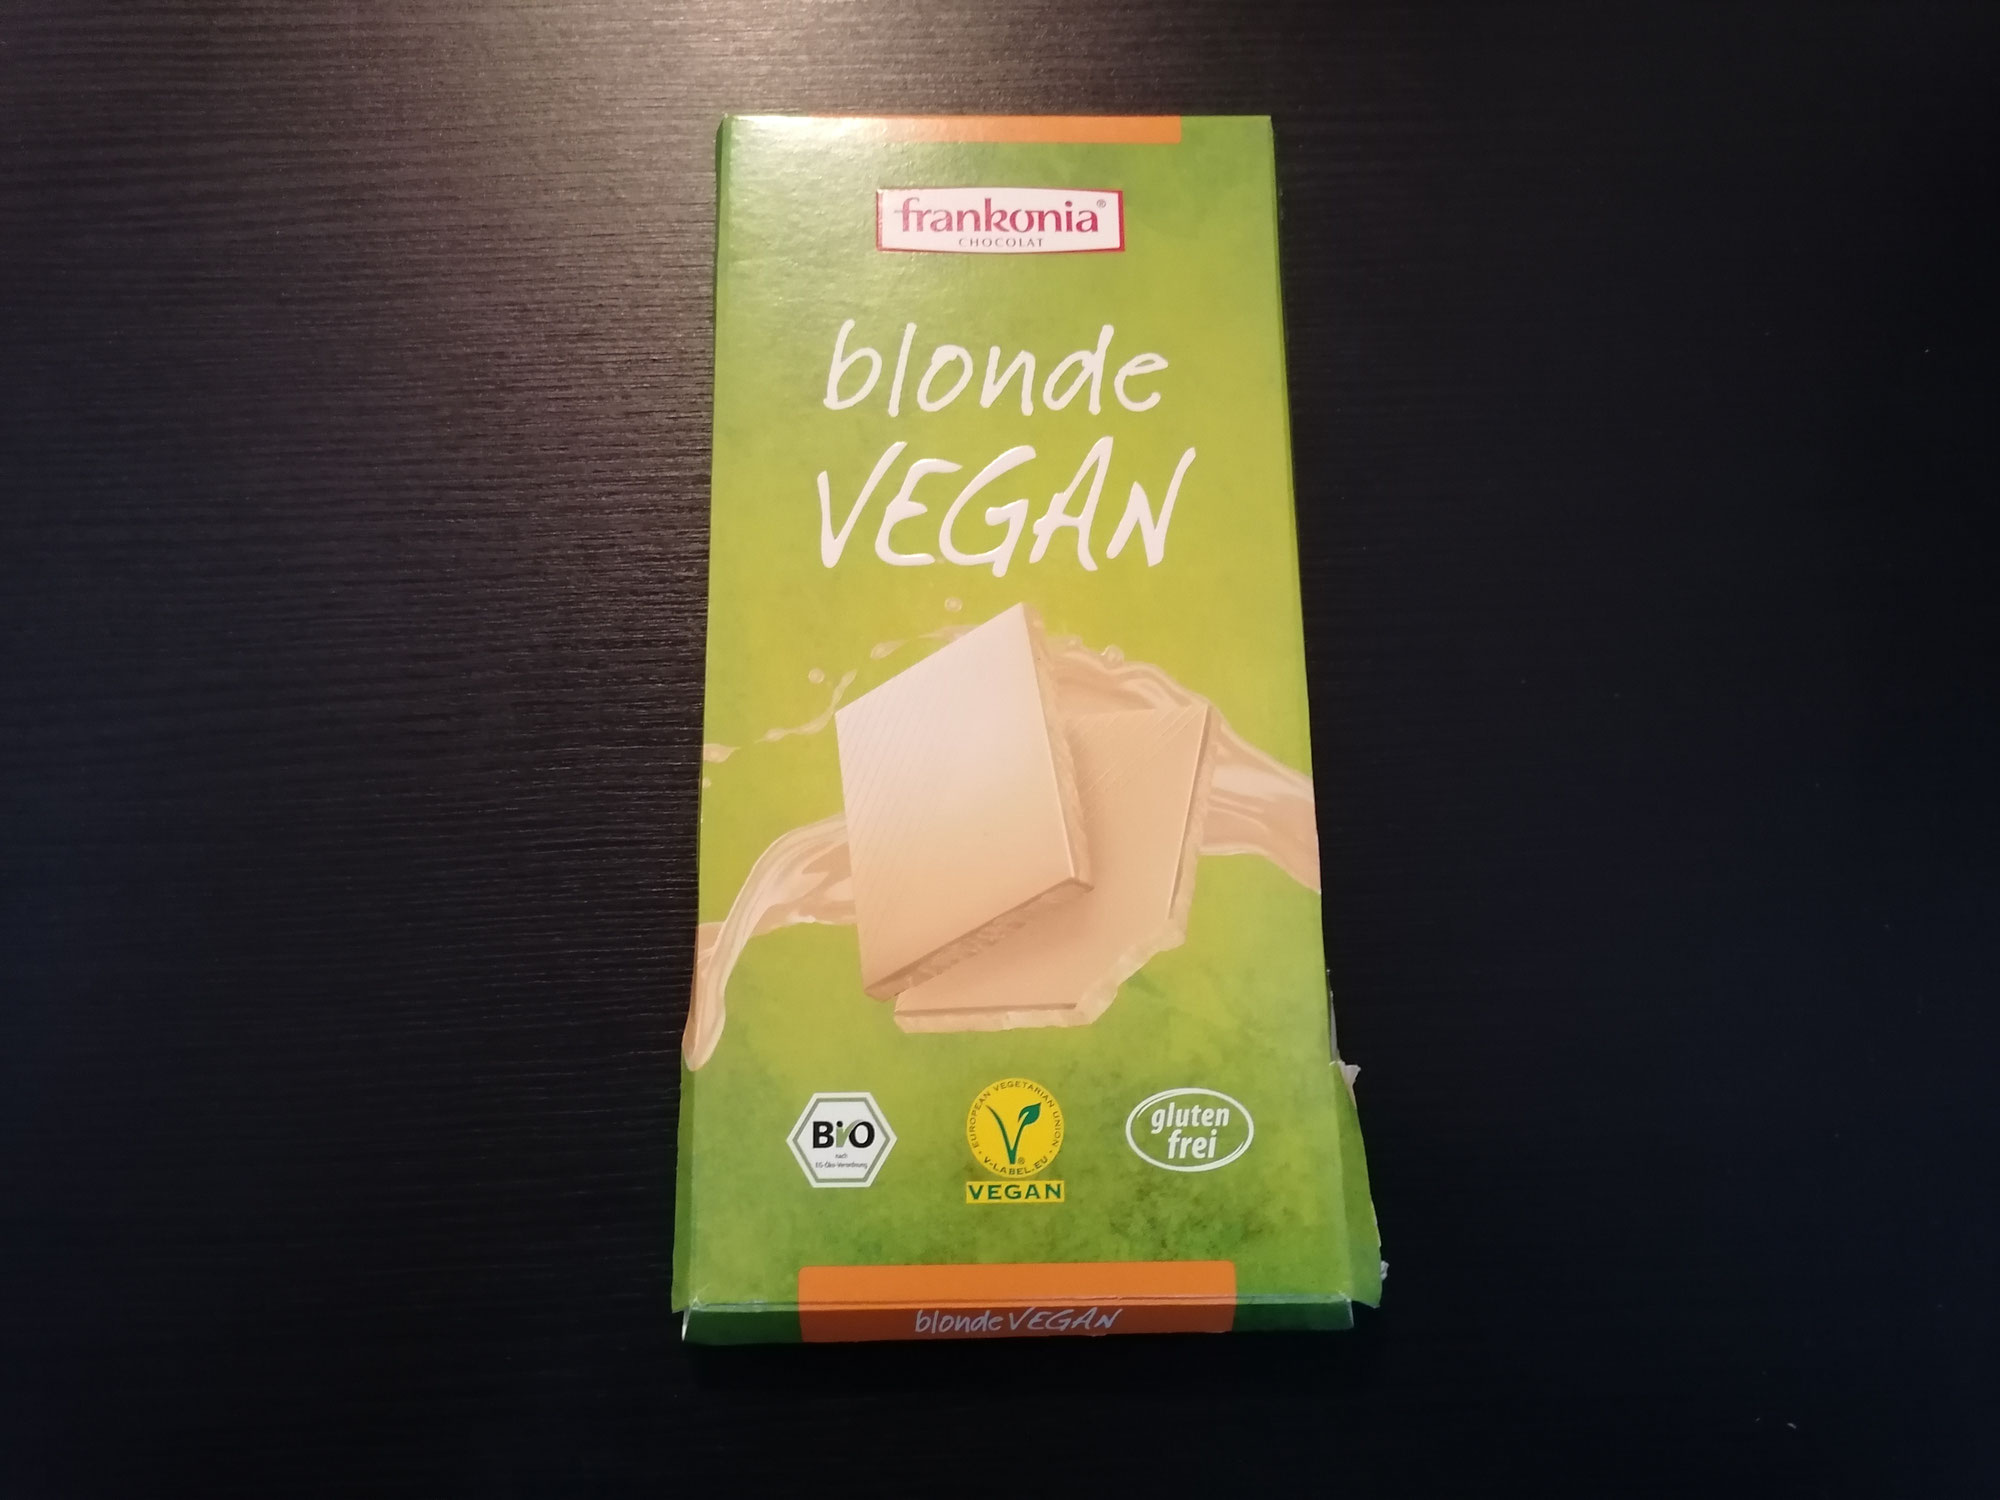 frankonia blonde vegan